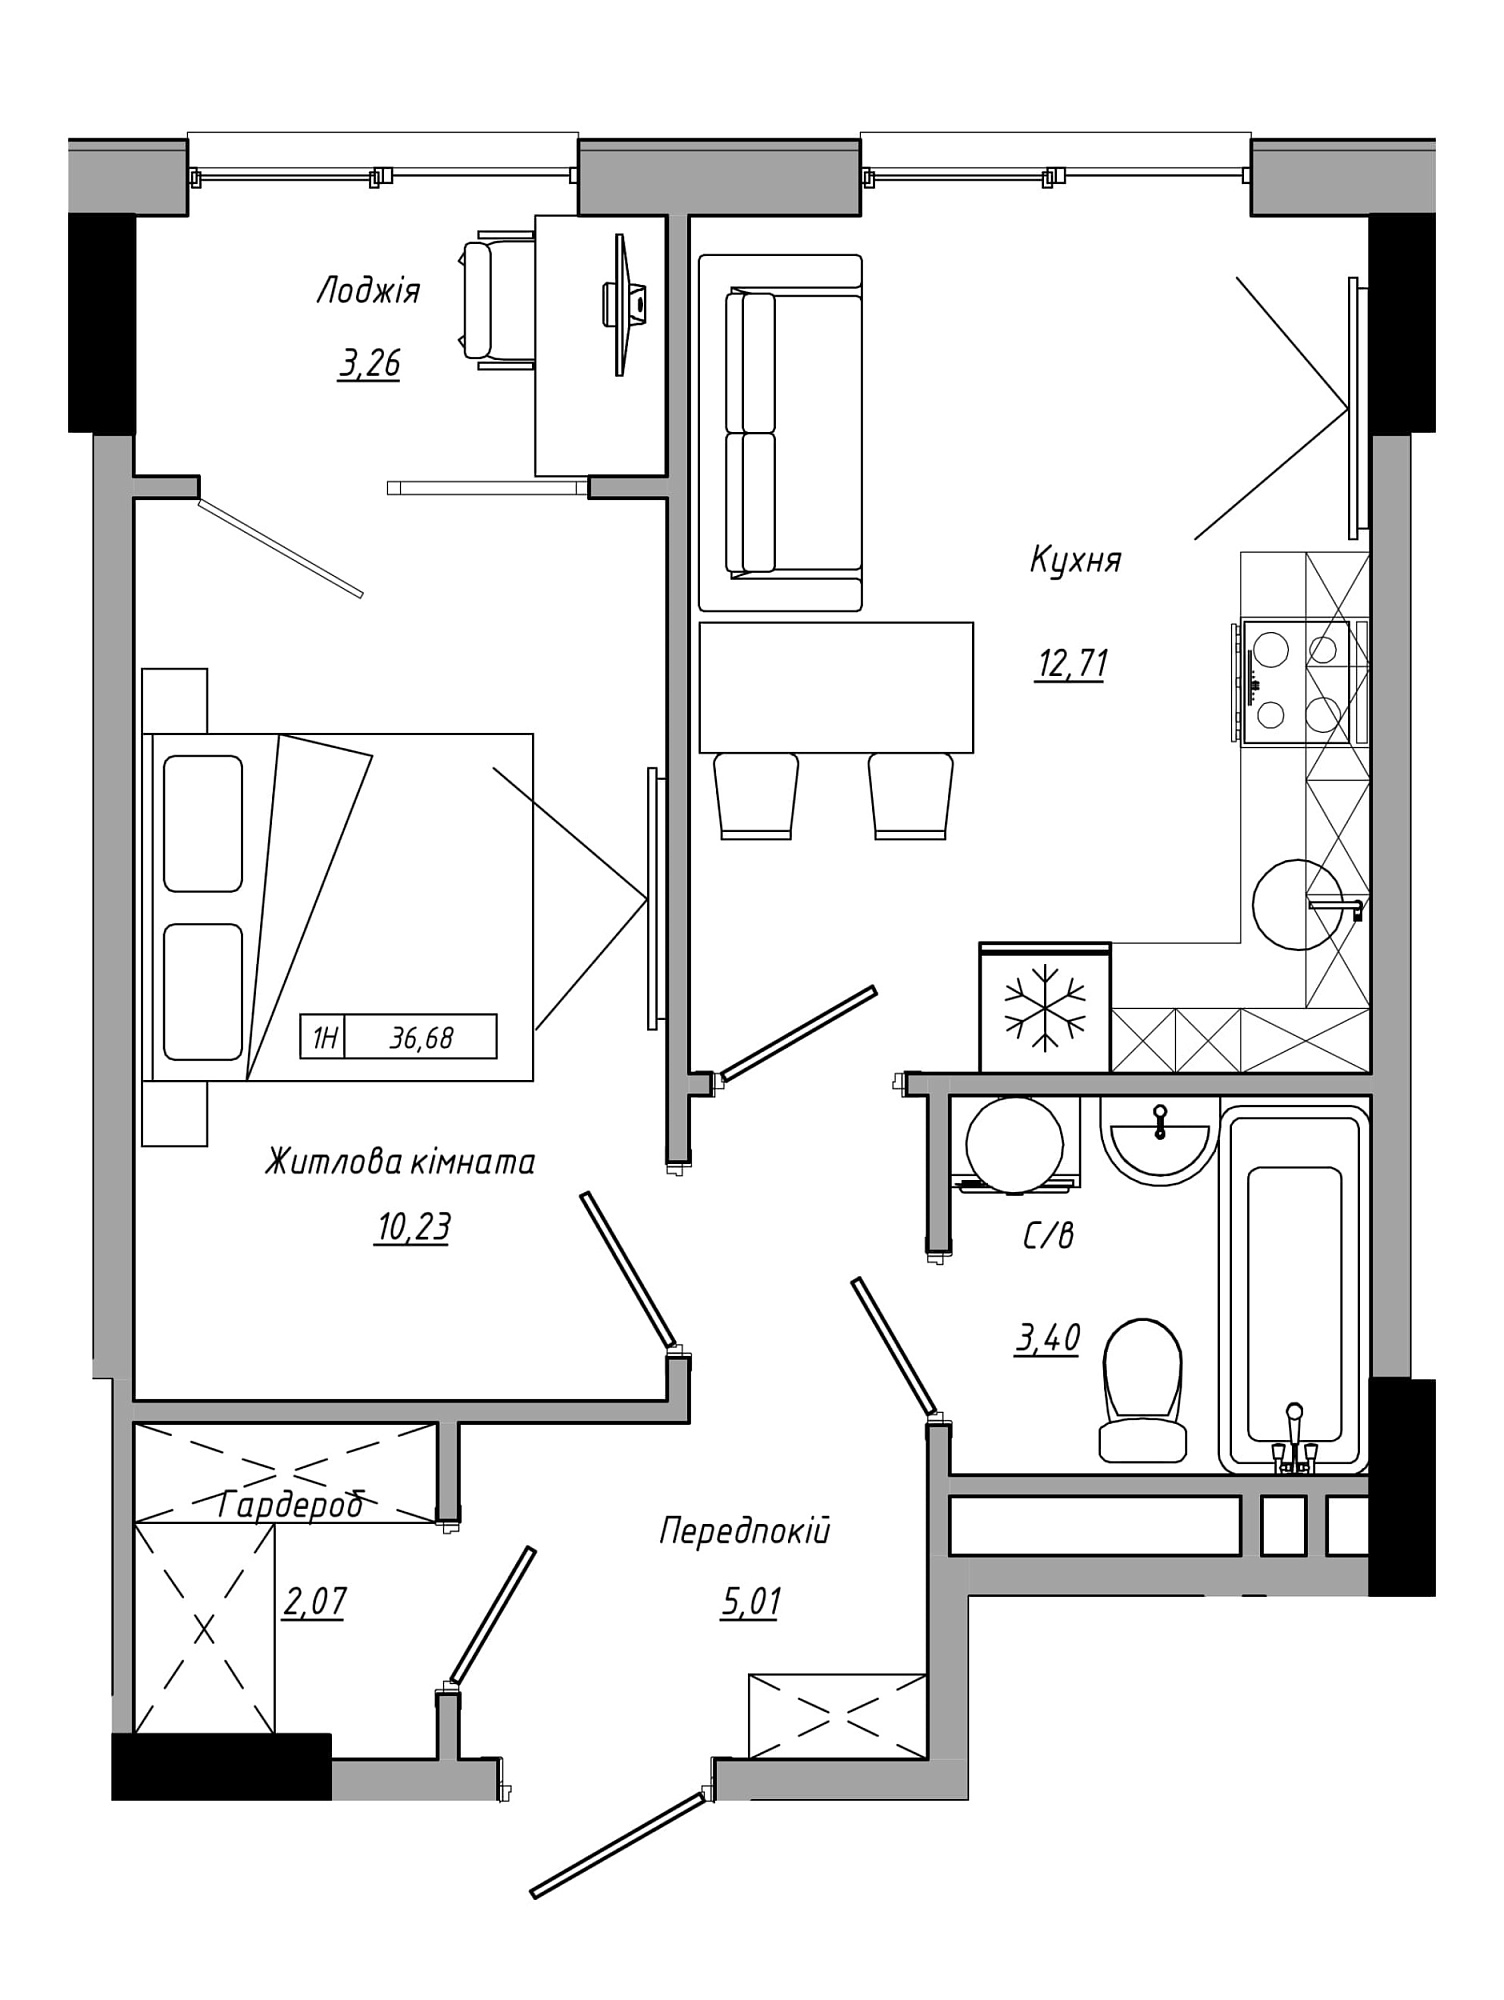 Планування 1-к квартира площею 36.68м2, AB-21-09/00016.